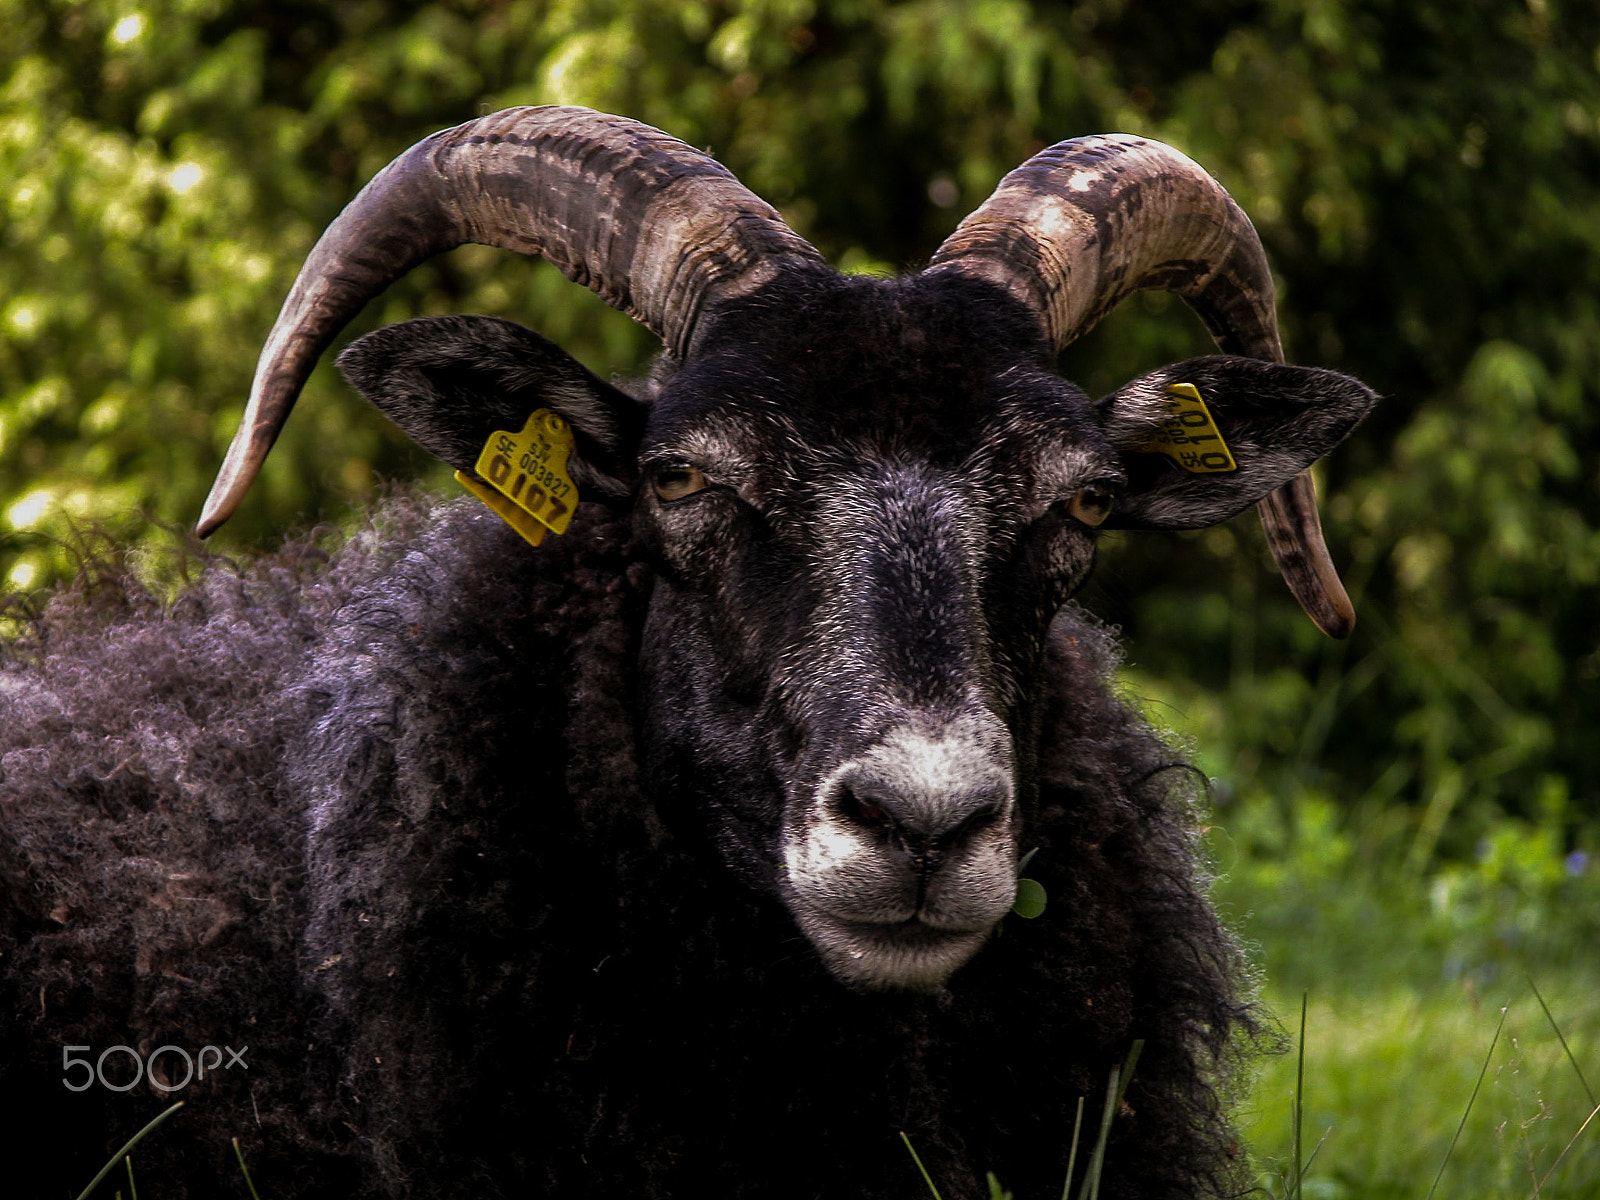 Nikon E5700 sample photo. A dark swedish sheep photography